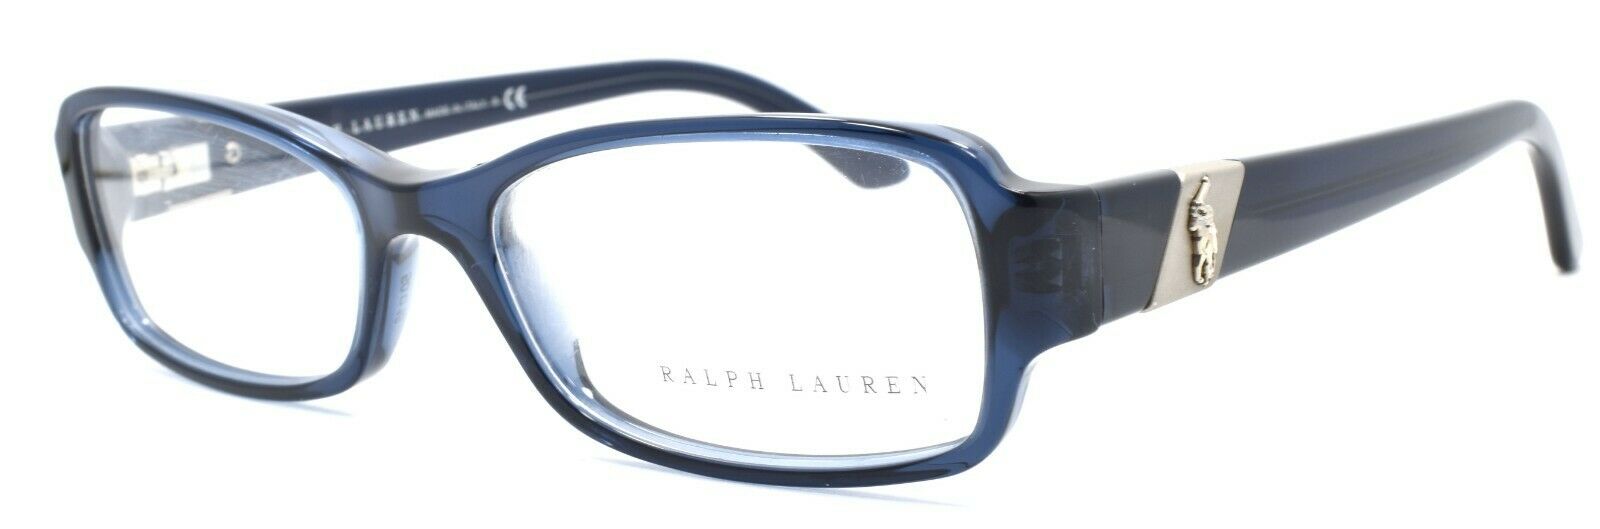 1-Ralph Lauren RL6075 5276 Women's Eyeglasses Frames 50-16-140 Blue Transparent-713132355589-IKSpecs